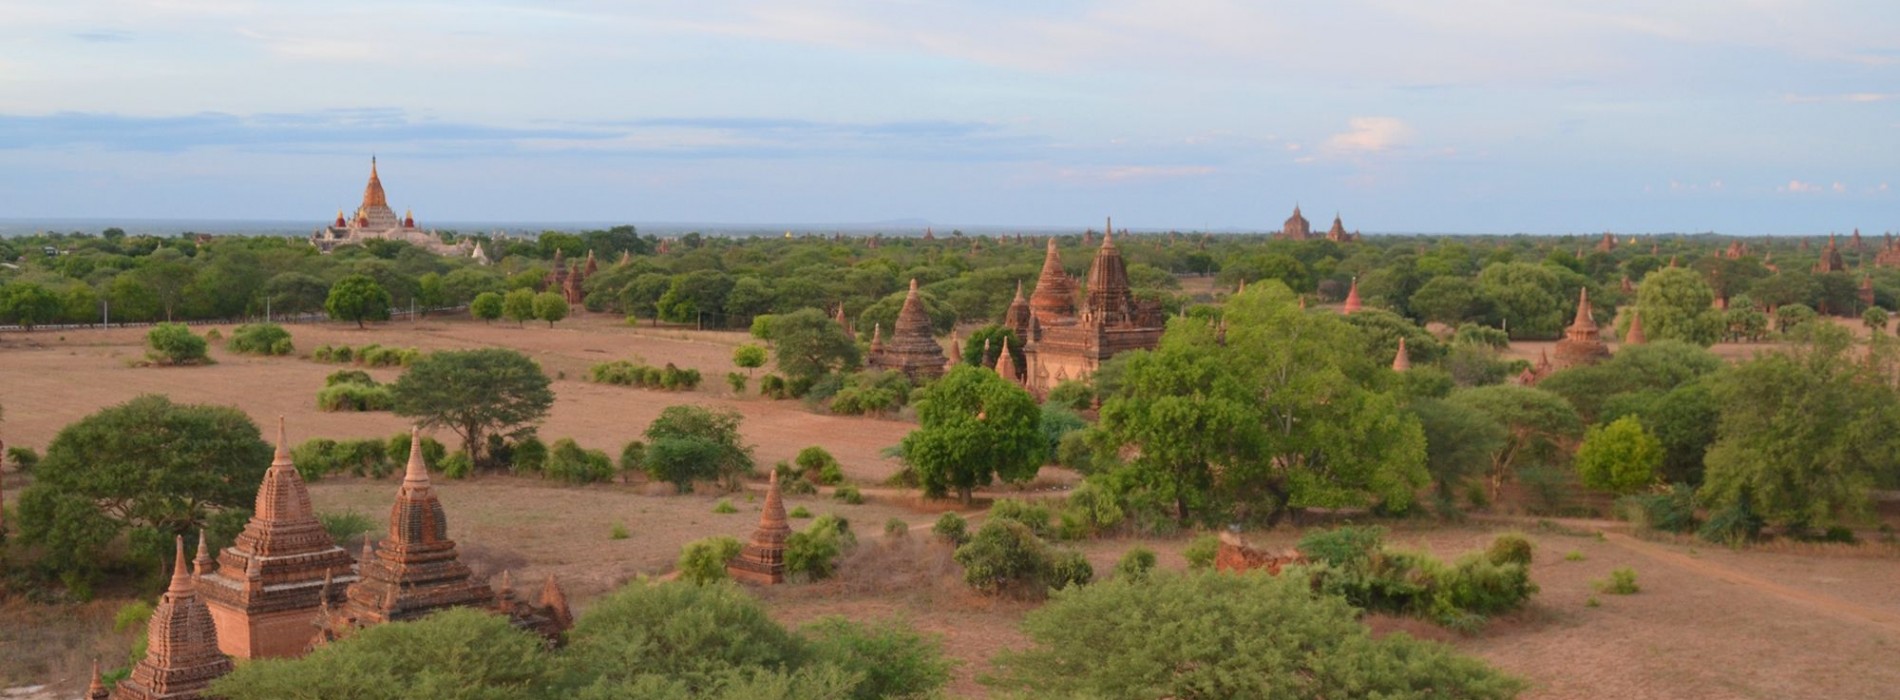 Temples_of_Bagan.jpg